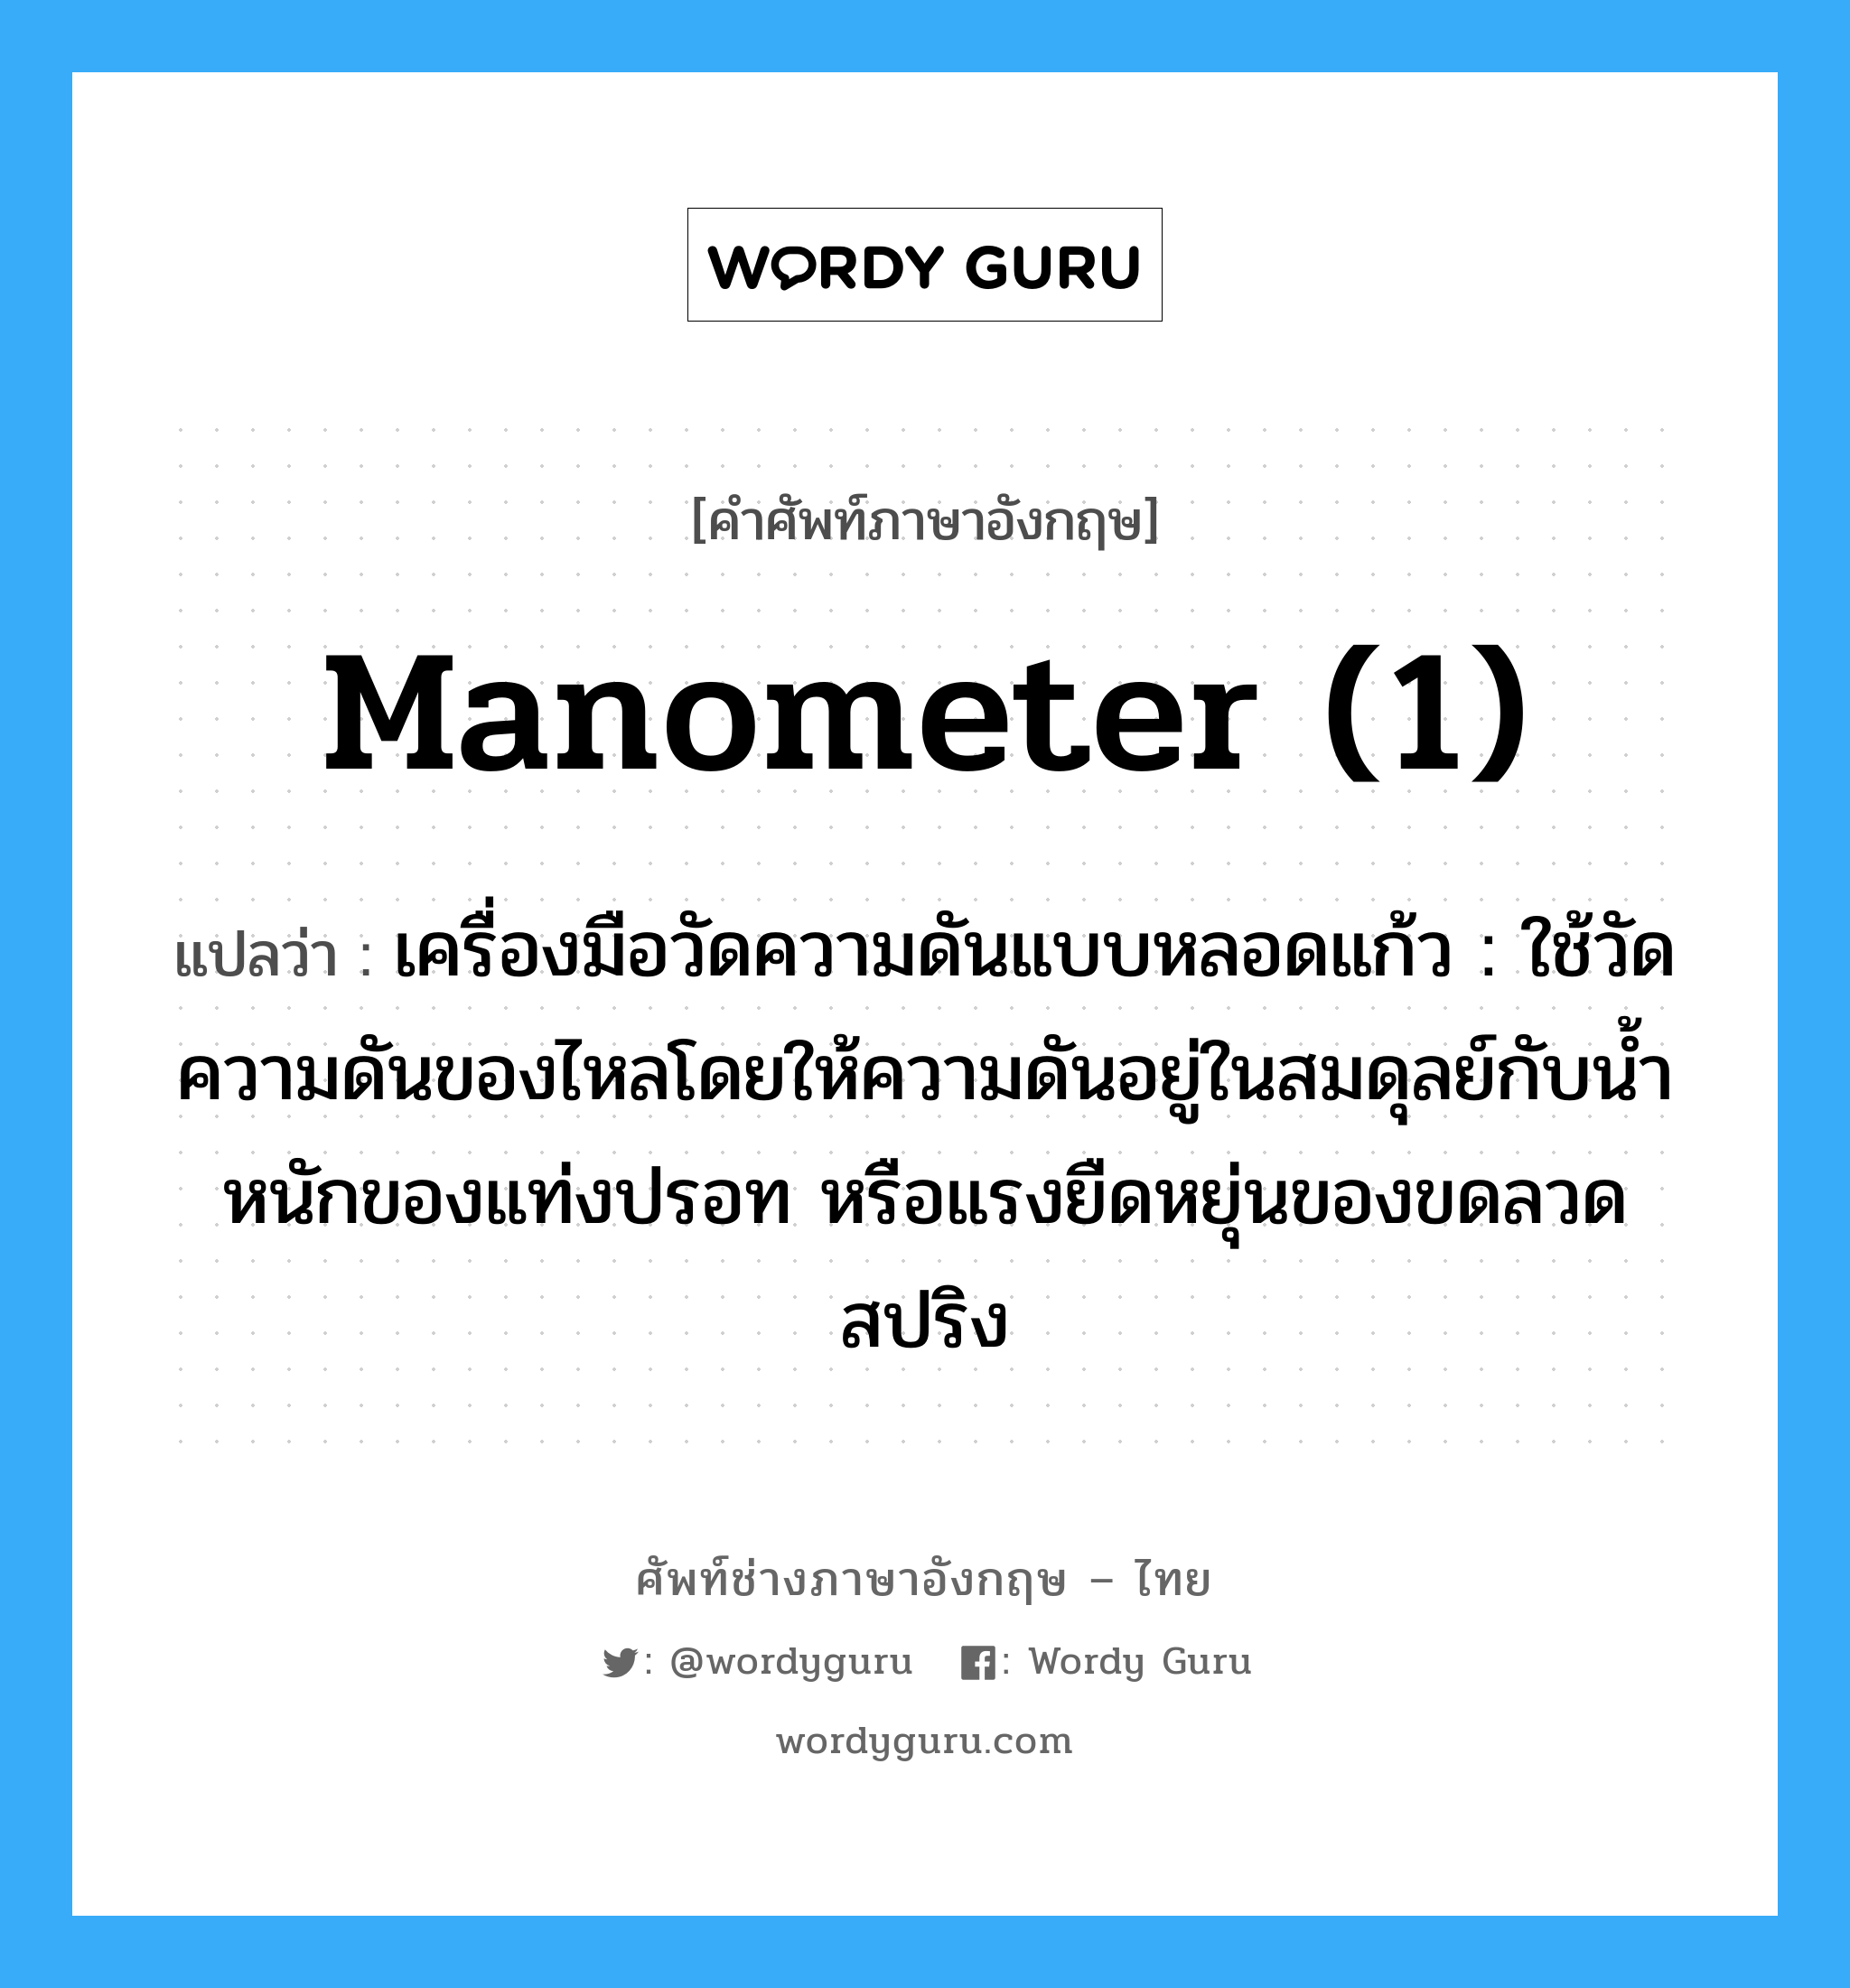 manometer (1) แปลว่า?, คำศัพท์ช่างภาษาอังกฤษ - ไทย manometer (1) คำศัพท์ภาษาอังกฤษ manometer (1) แปลว่า เครื่องมือวัดความดันแบบหลอดแก้ว : ใช้วัดความดันของไหลโดยให้ความดันอยู่ในสมดุลย์กับน้ำหนักของแท่งปรอท หรือแรงยืดหยุ่นของขดลวดสปริง